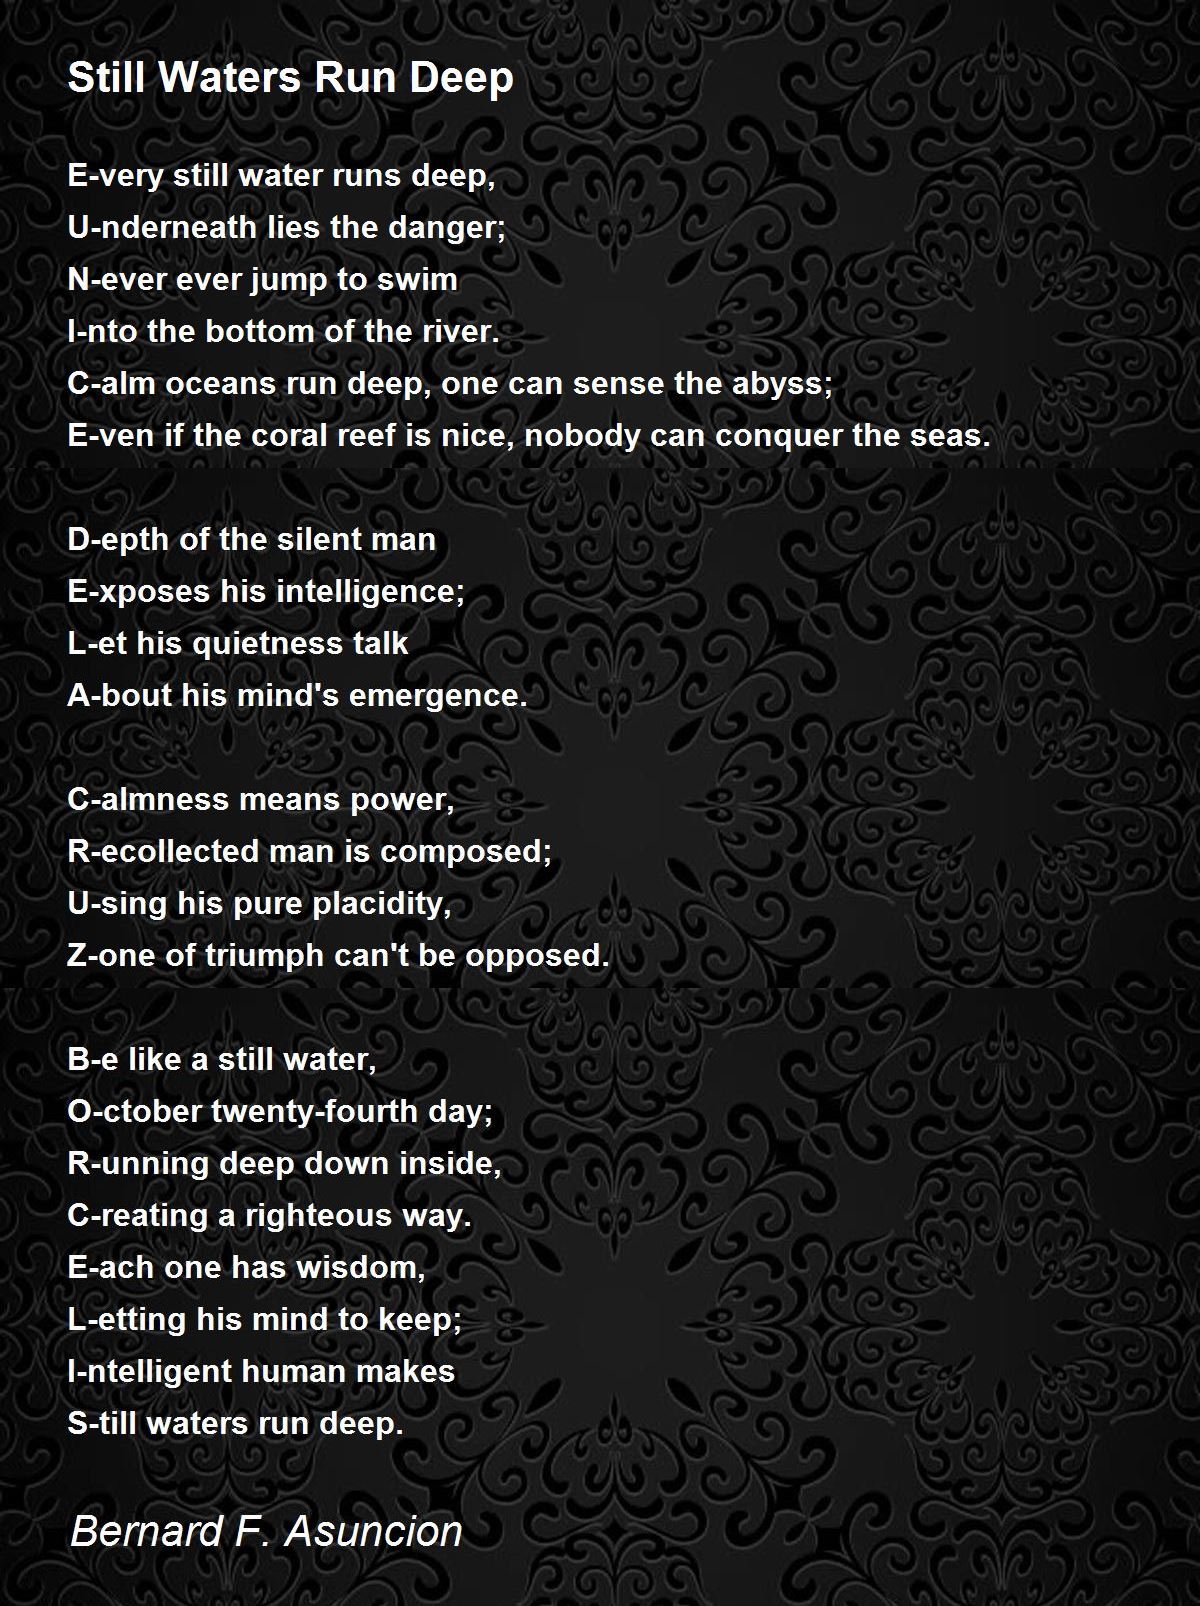 Still Waters Run Deep Poem by Bernard F. Asuncion - Poem Hunter